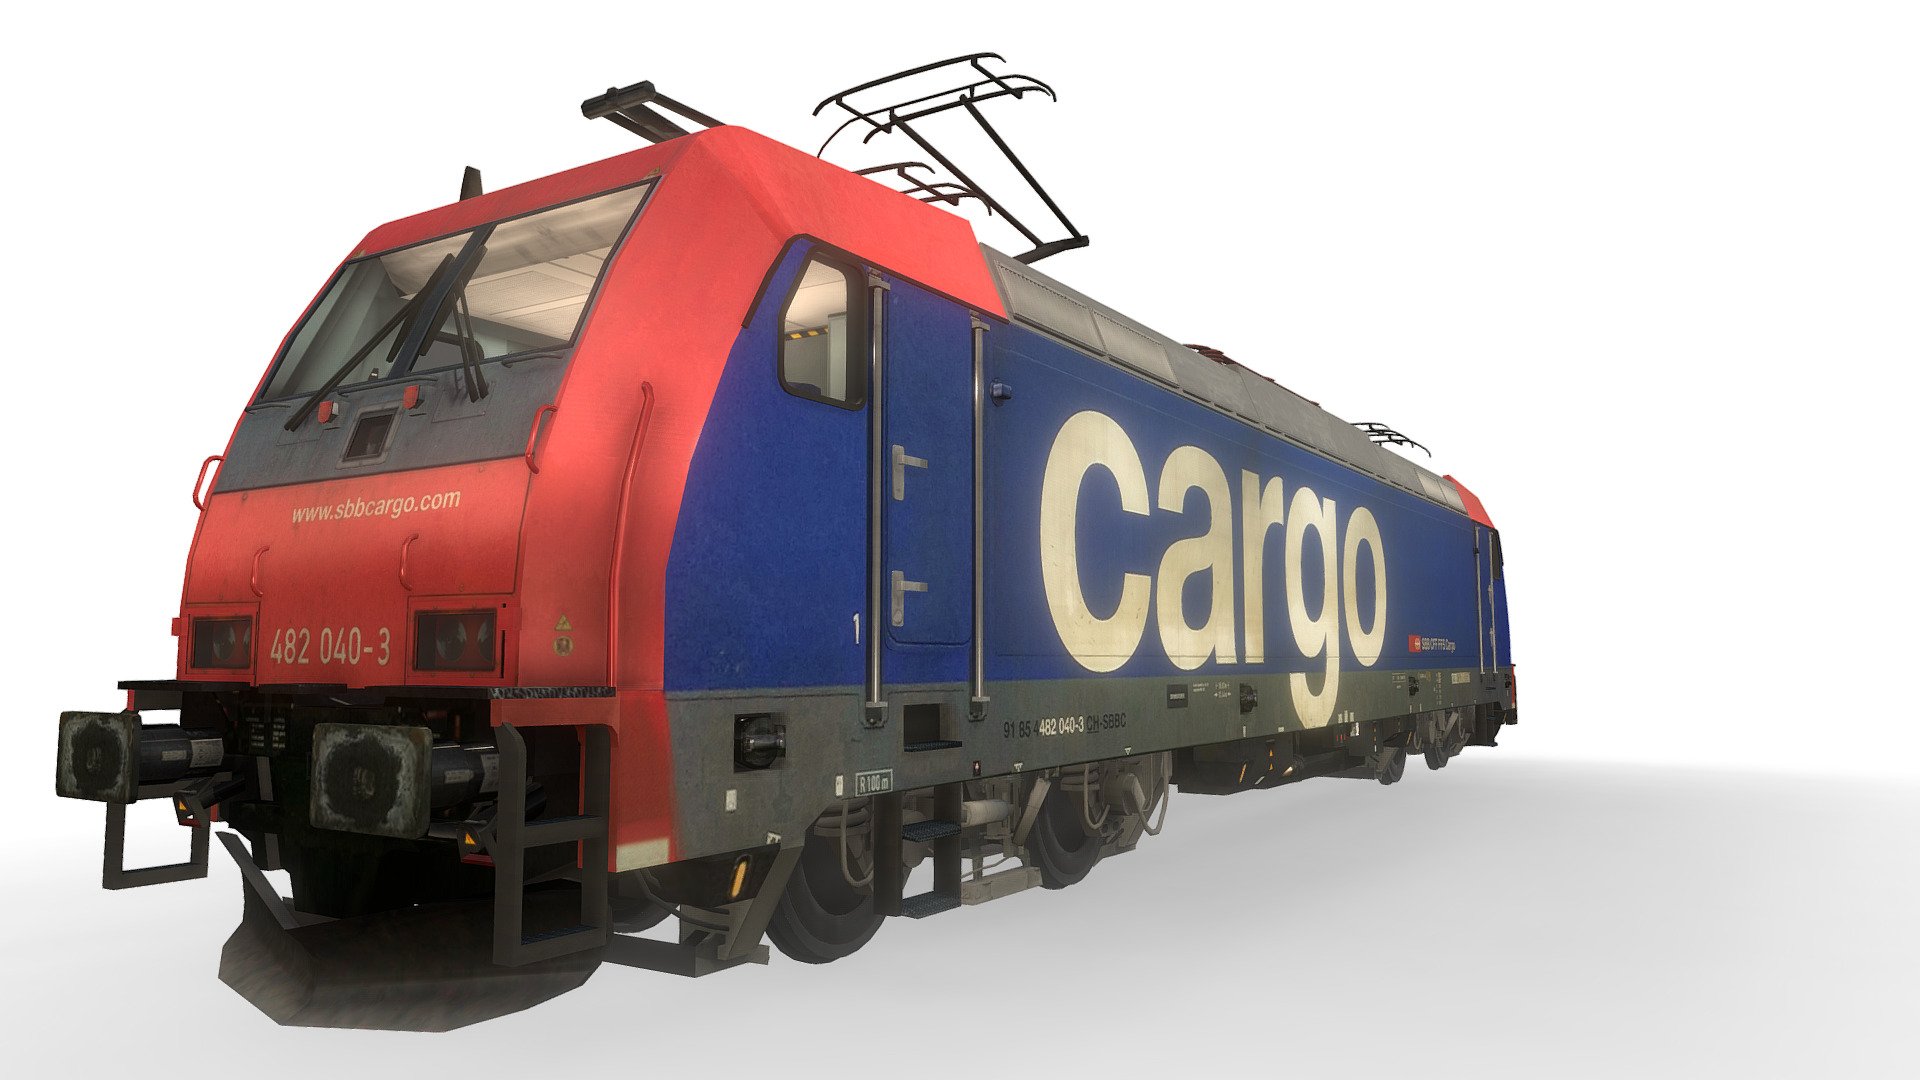 Locomotive Class 185 - RE482 040-3 - SBB Cargo - Buy Royalty Free 3D model by cj187 3d model